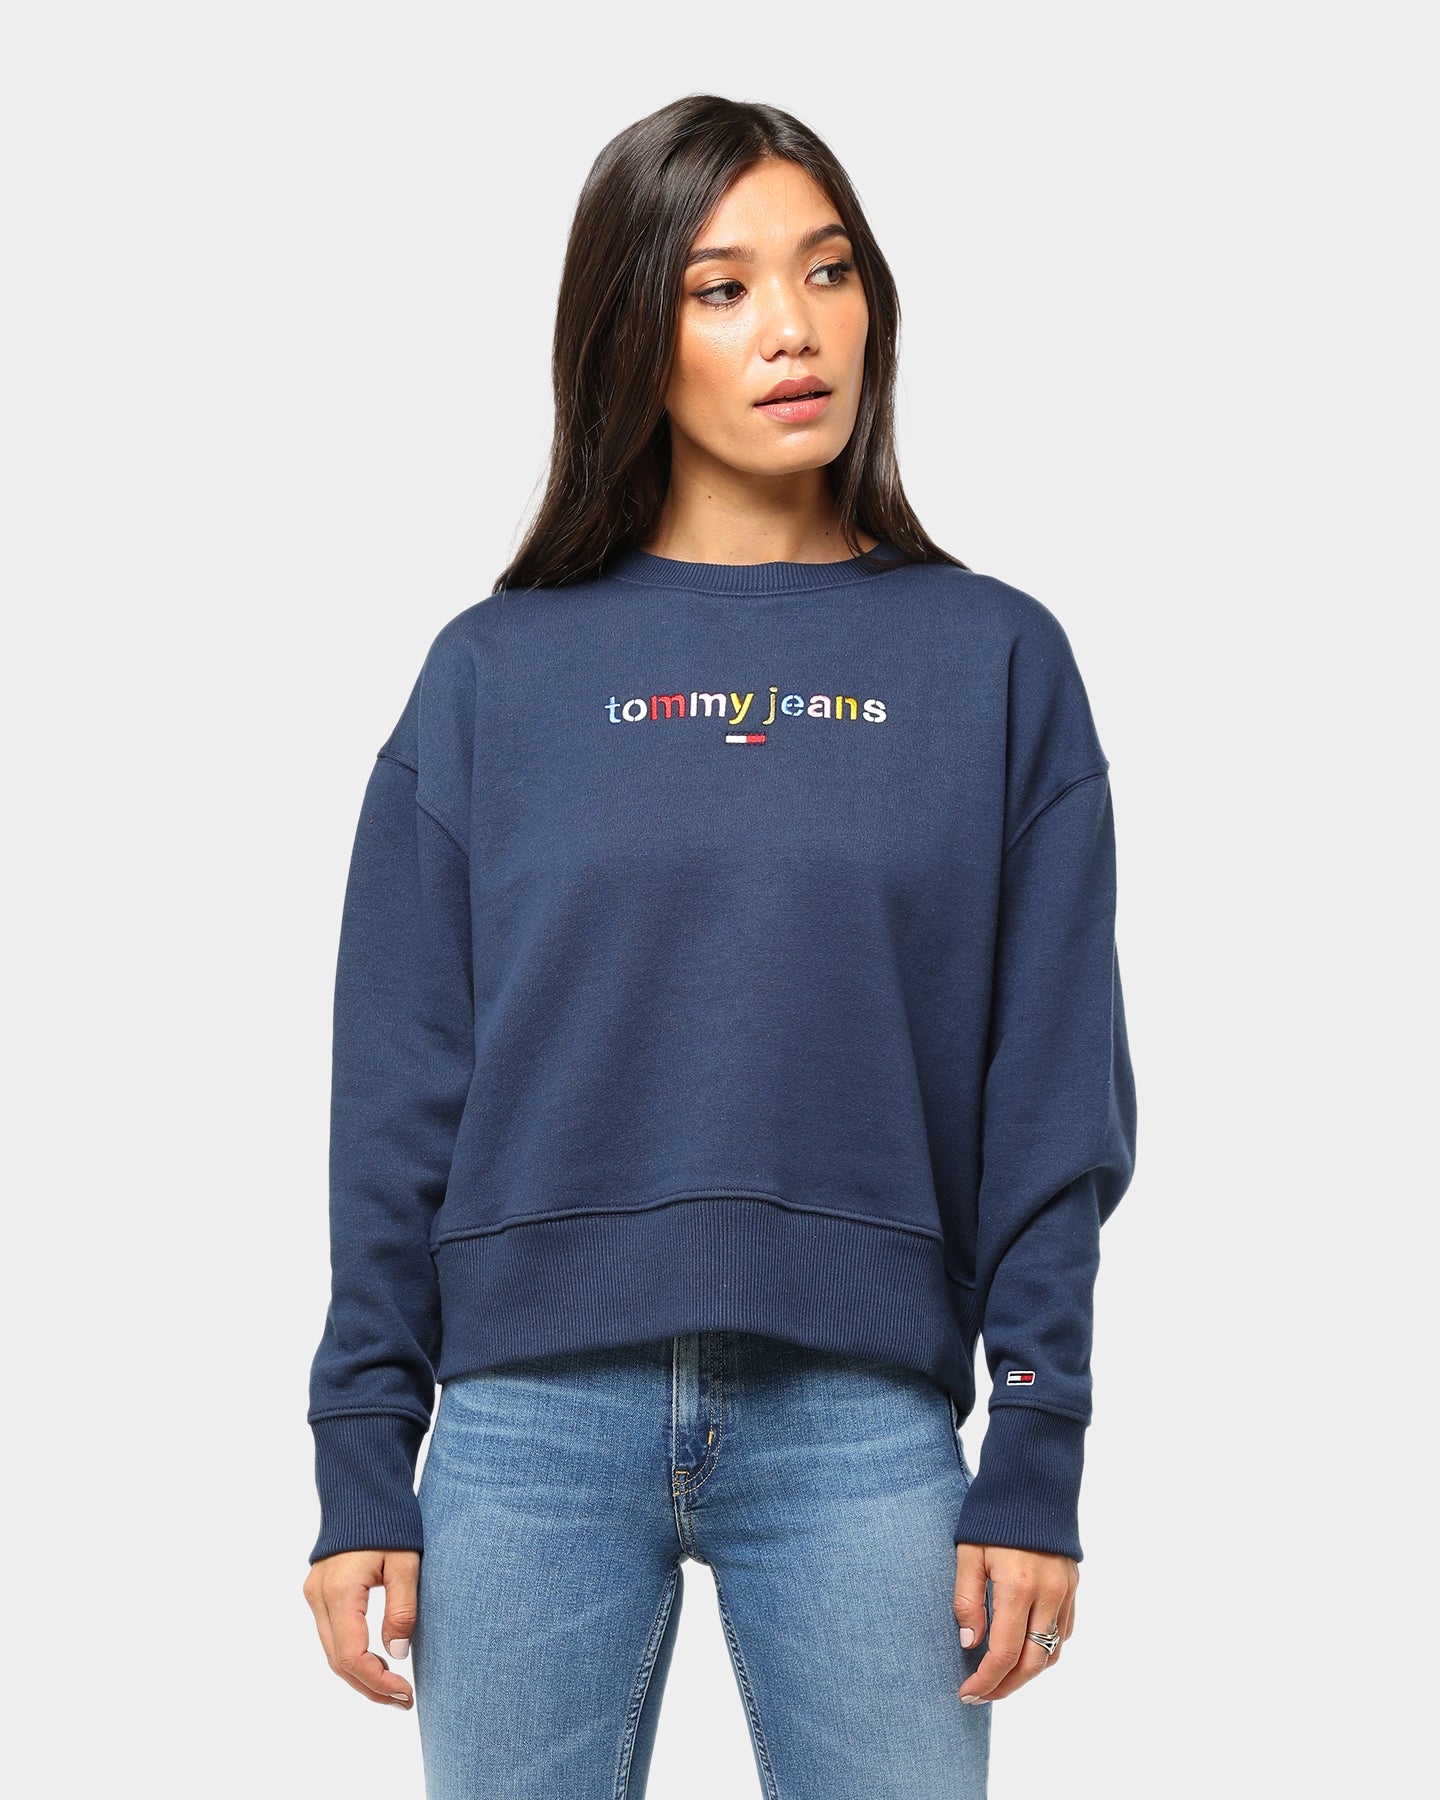 tommy jeans logo hoodie women's